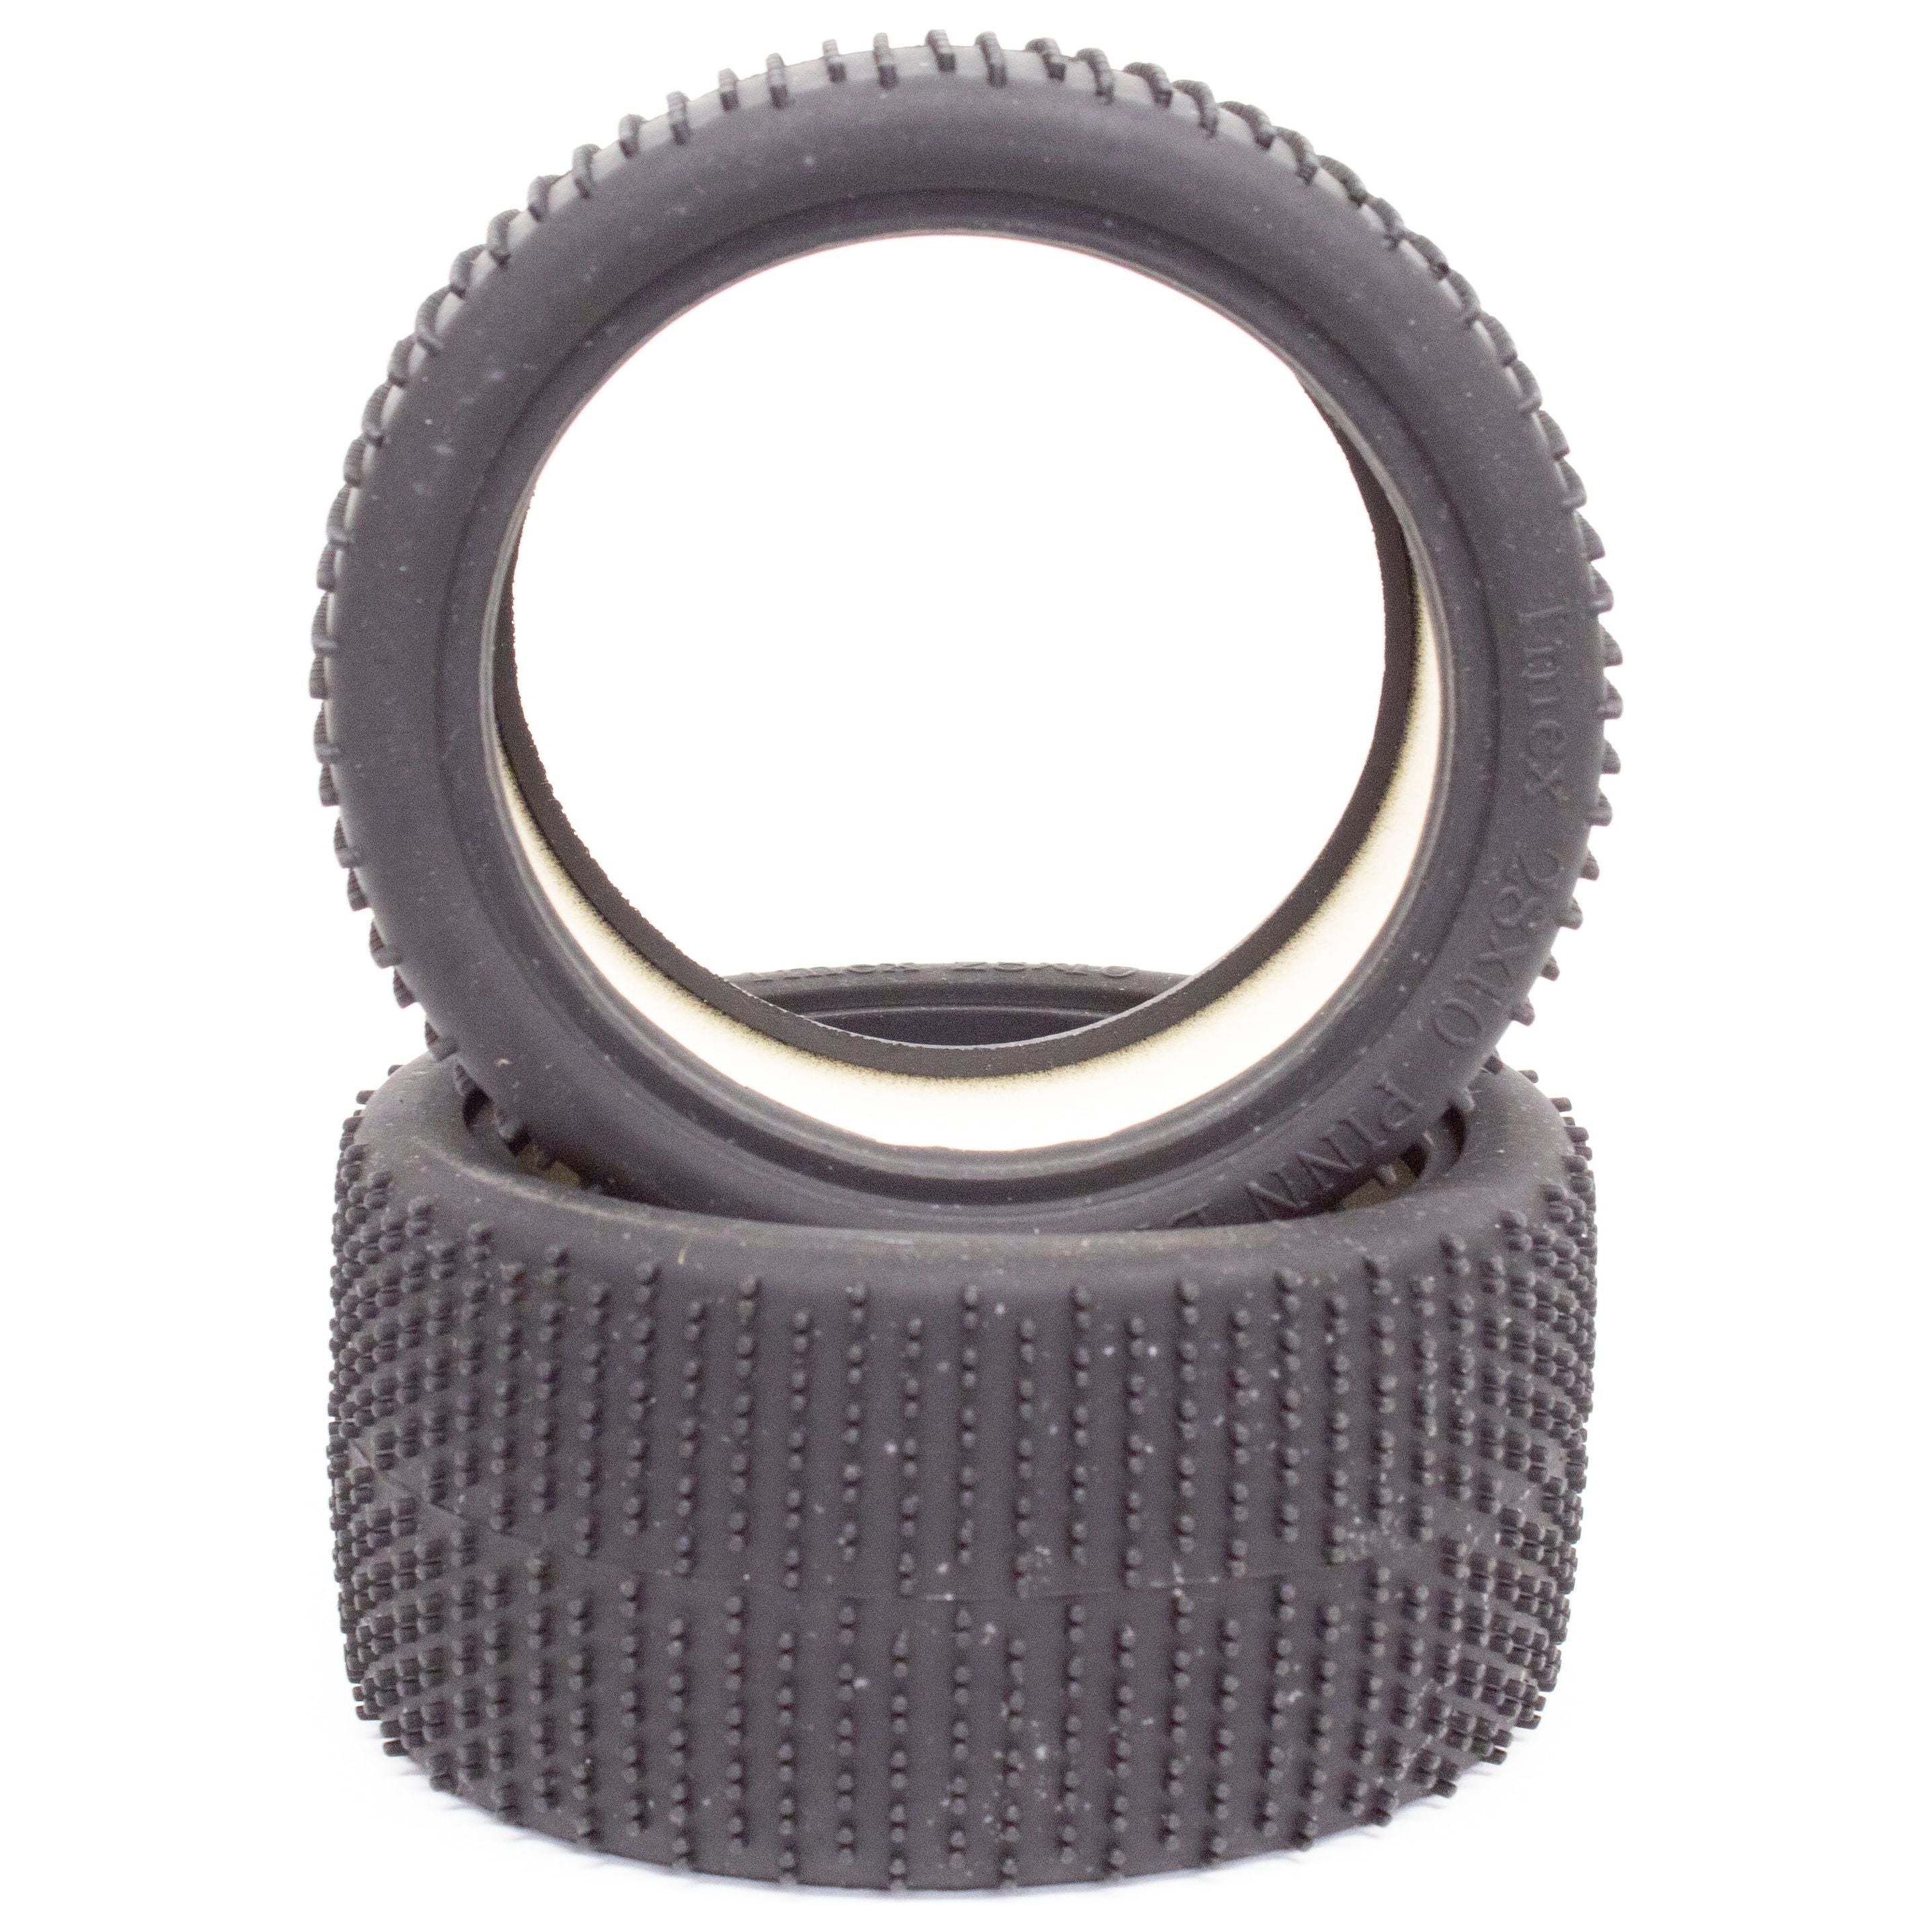 IMEX 2.8 Mini Pinn (Soft) Tires (1 Pair)